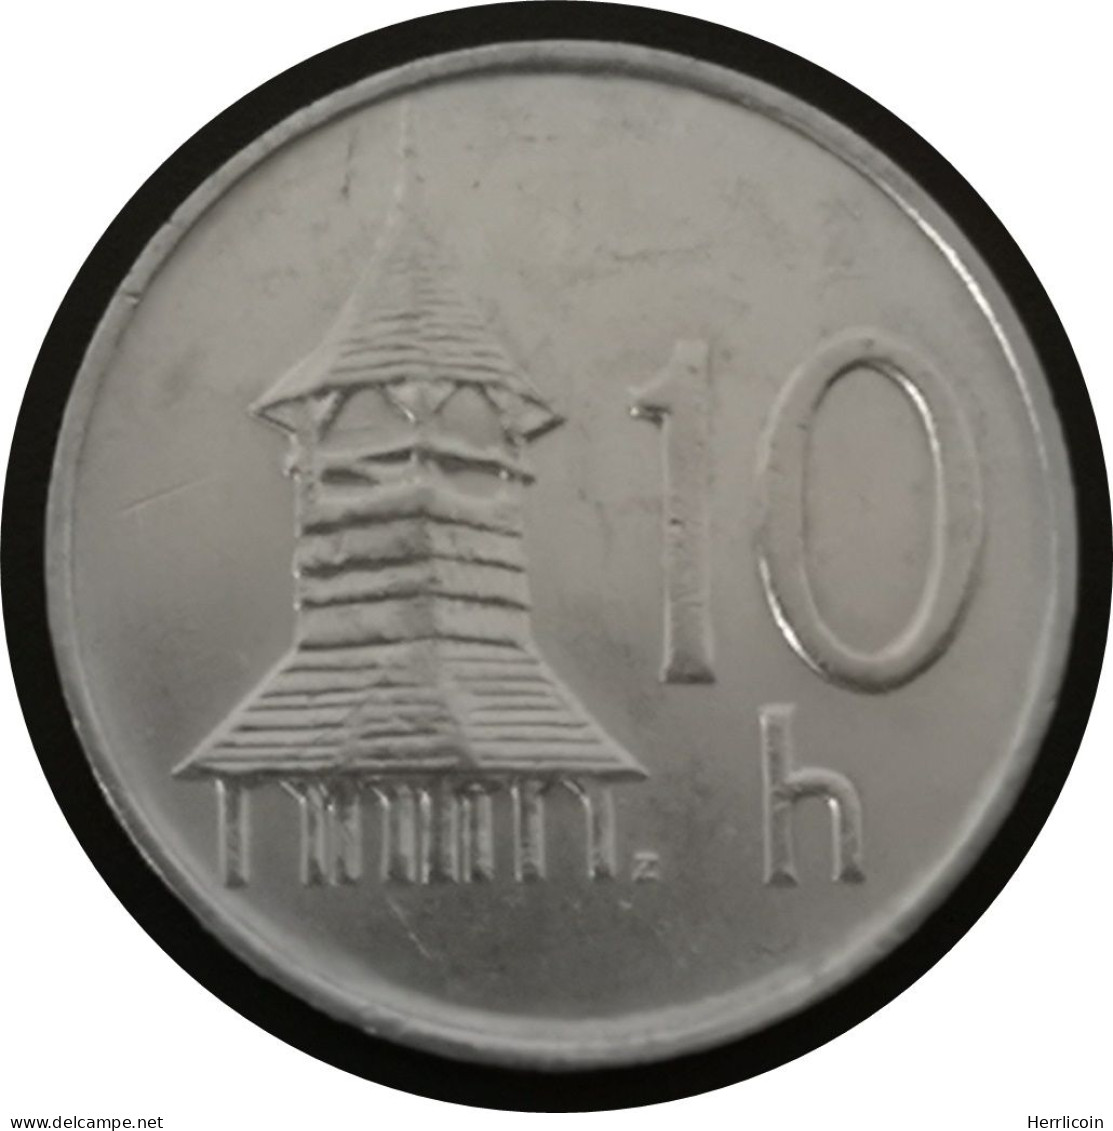 Monnaie Slovaquie - 1993 - 10 Halierov - Slovakia